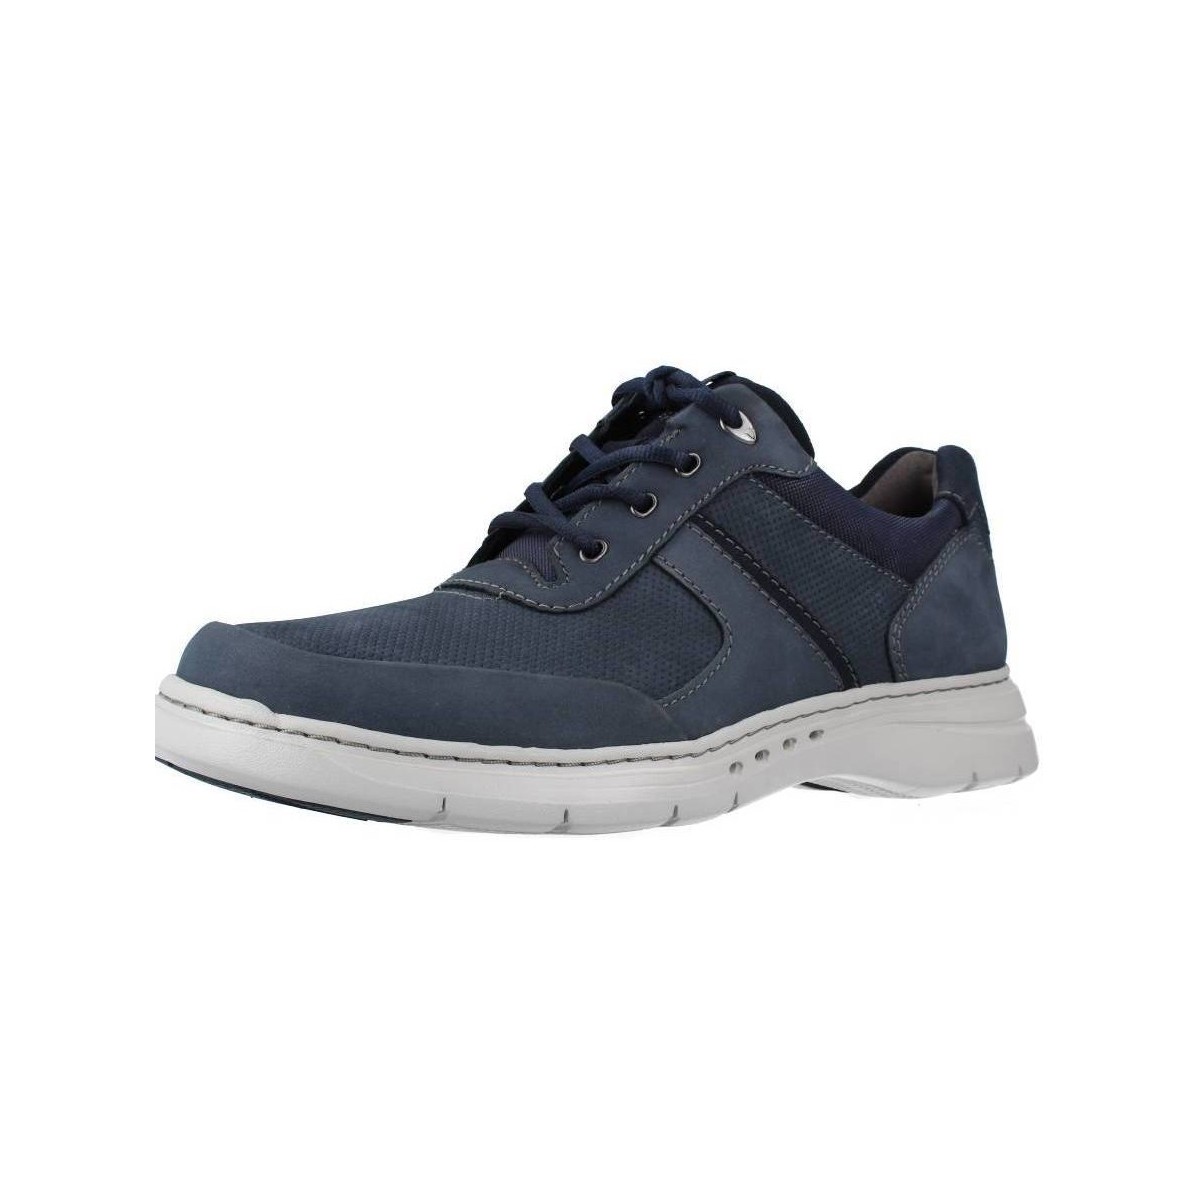 Pantofi Bărbați Sneakers Clarks 26161649 albastru